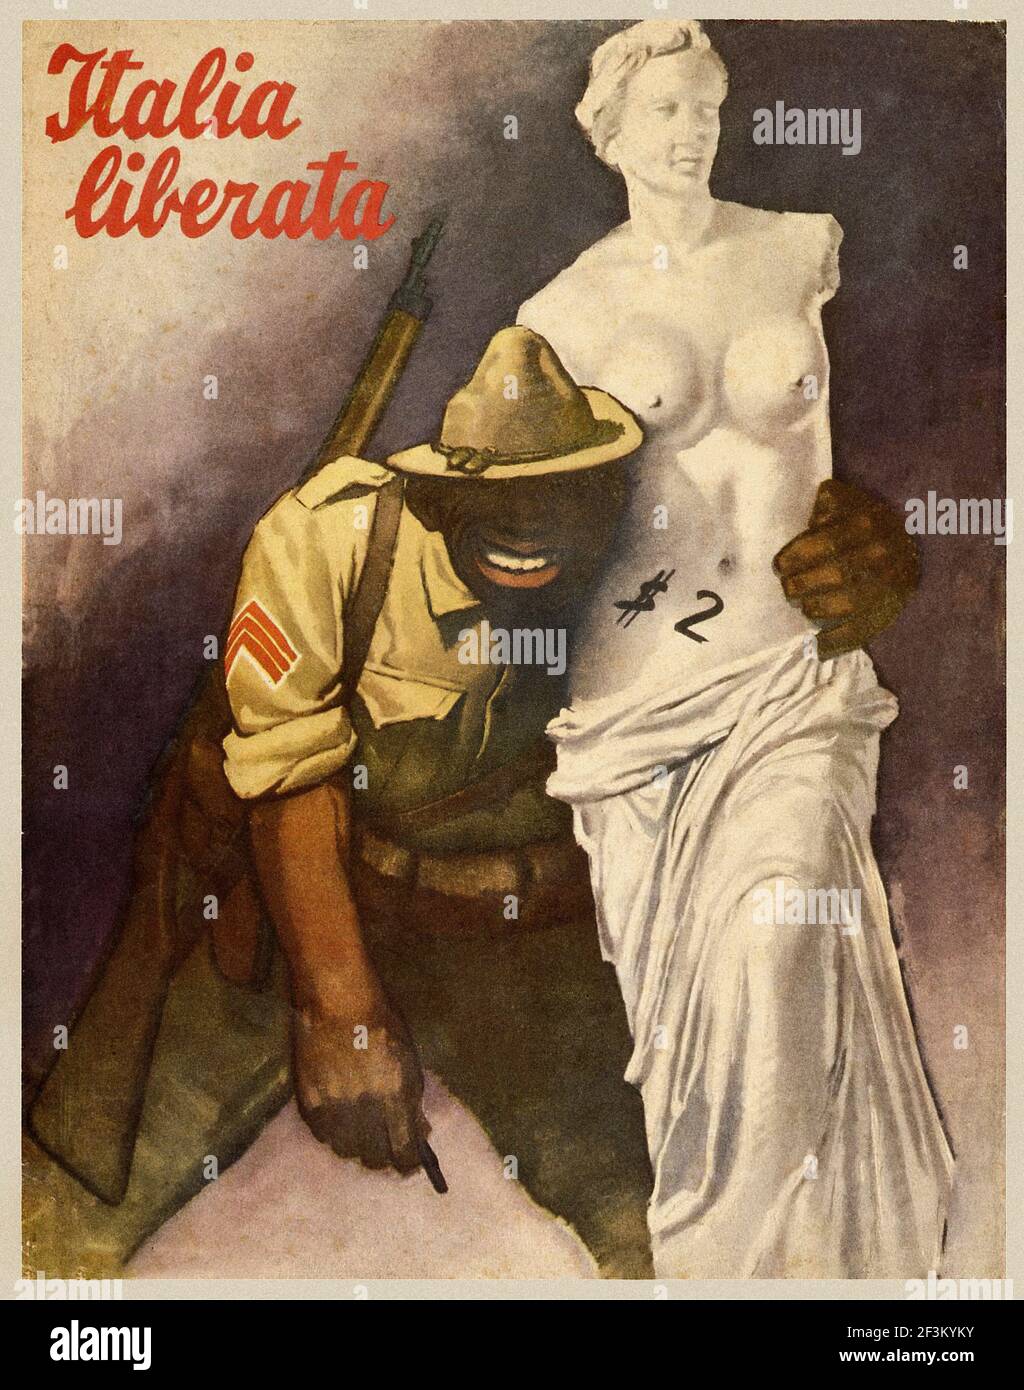 Manifesto italiano di propaganda antiamericana. L'Italia liberata! Italia, 1944 Foto Stock